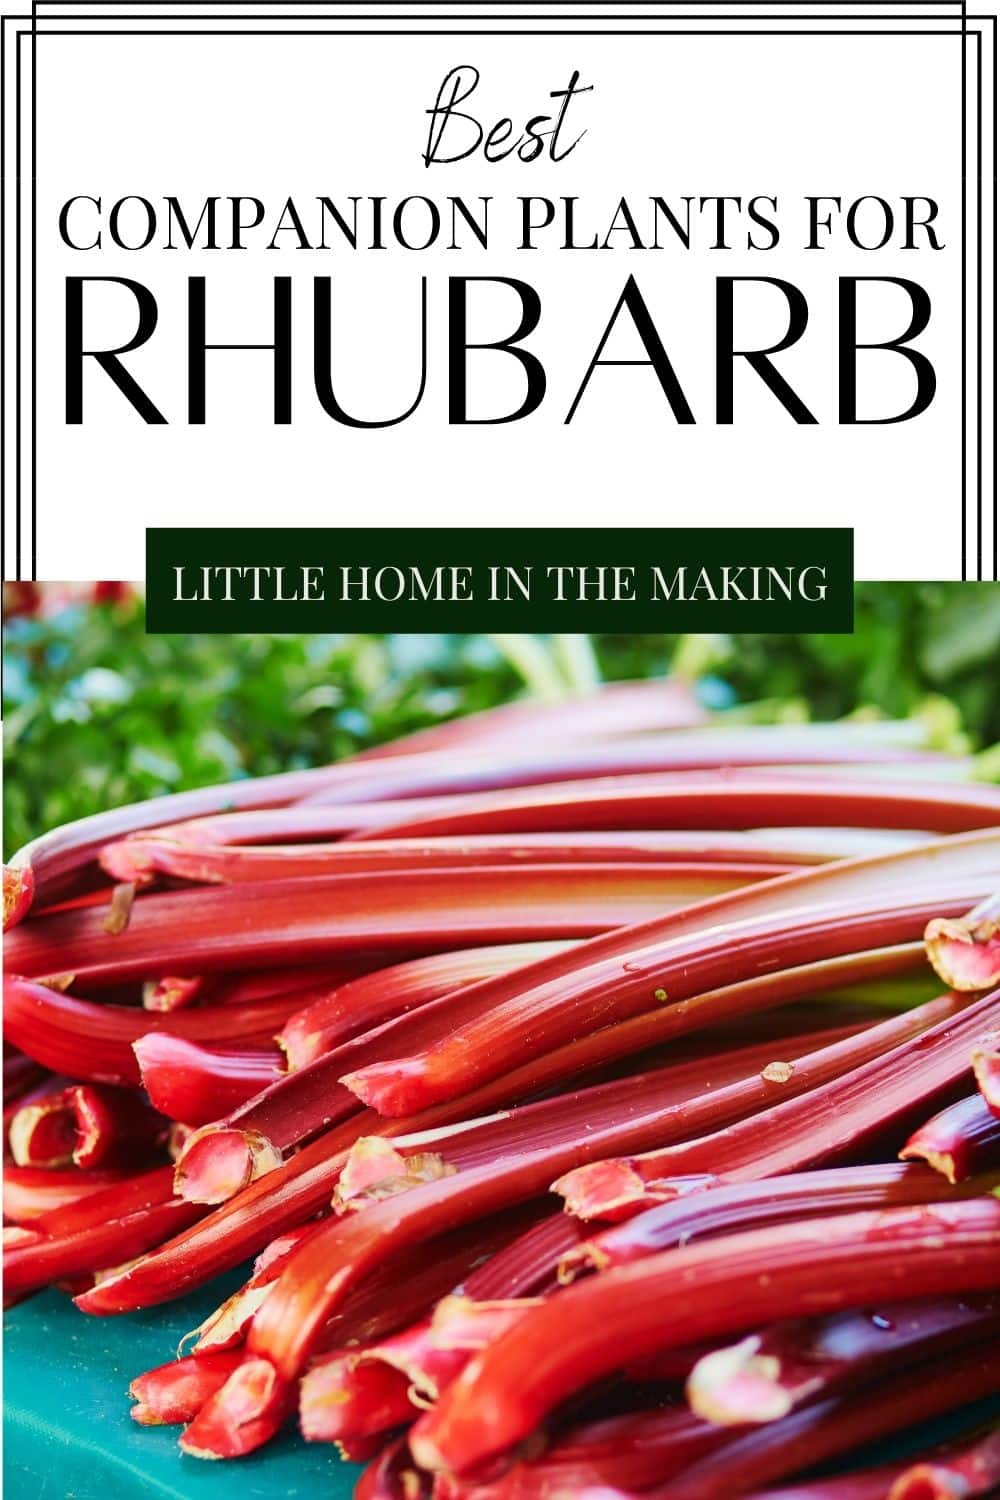 Image of Rhubarb Companion Planting Blog Post